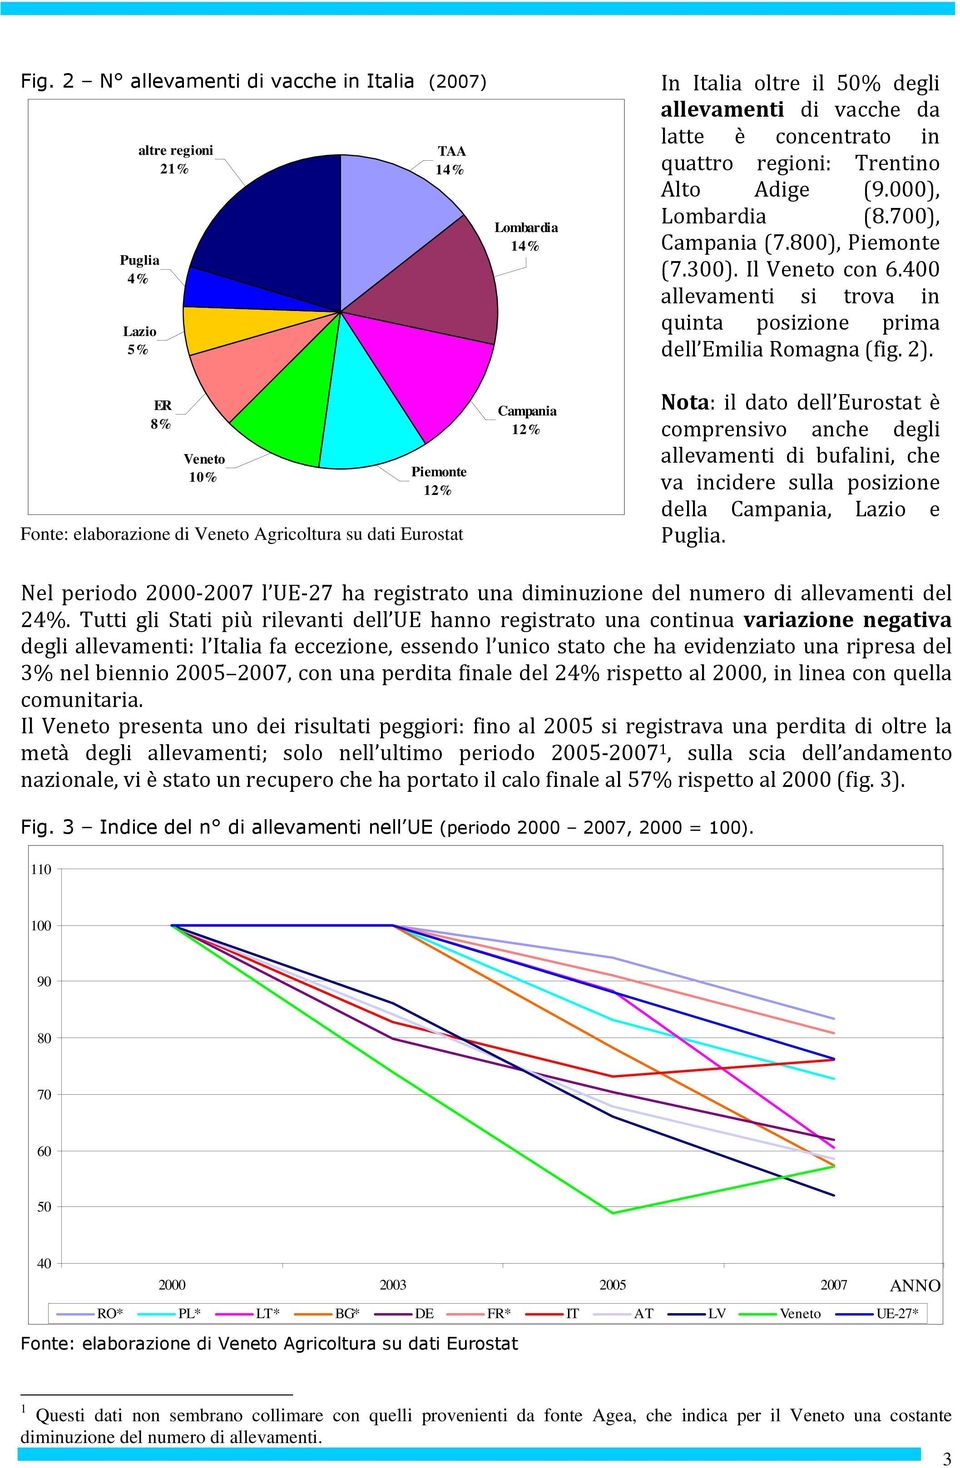 ER 8% Veneto 1% Piemonte 12% Fonte: elaborazione di Veneto Agricoltura su dati Eurostat Campania 12% Nota: il dato dell Eurostat è comprensivo anche degli allevamenti di bufalini, che va incidere